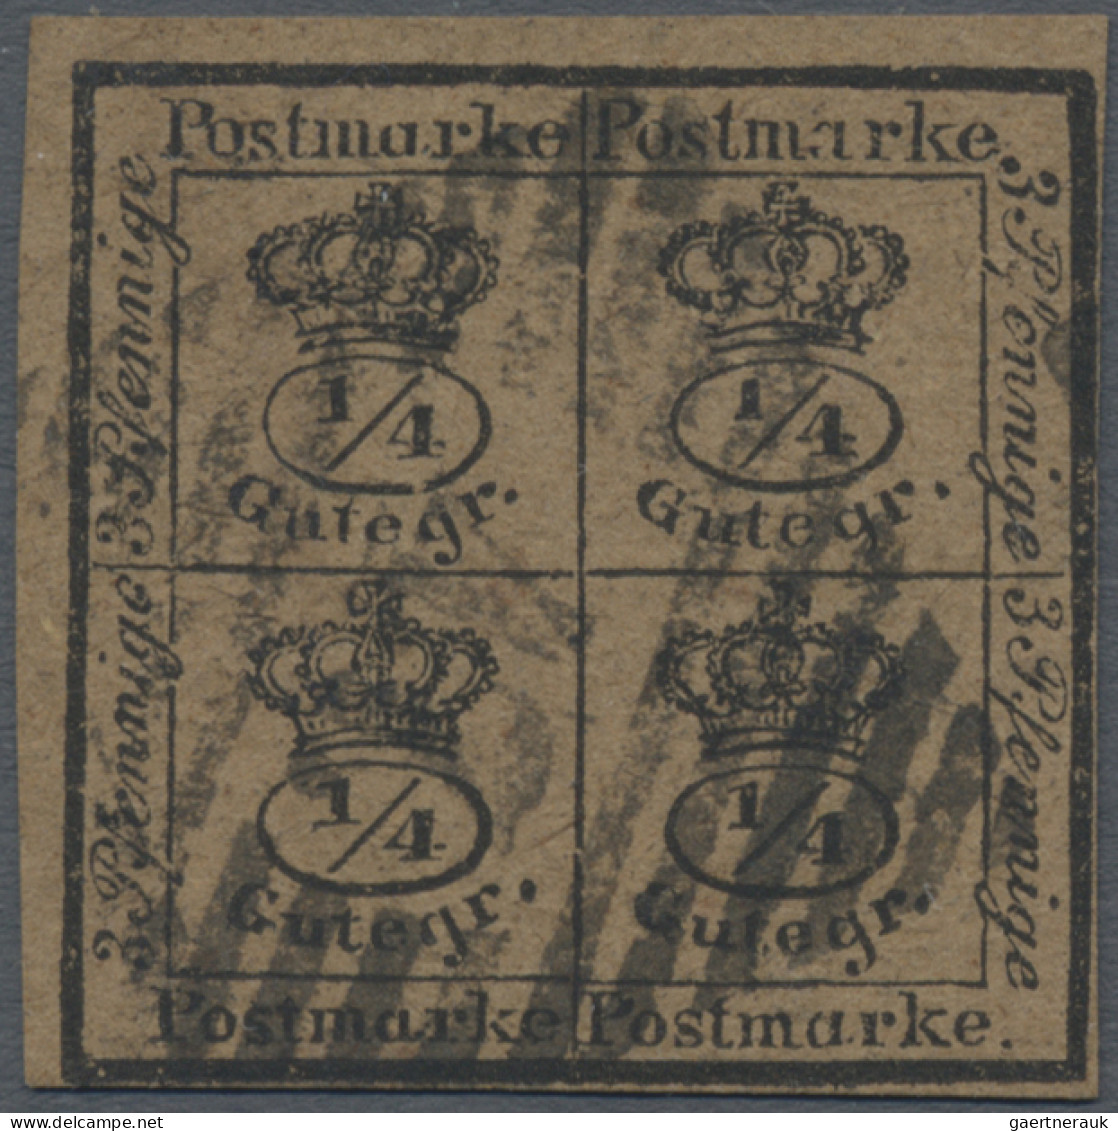 Braunschweig - Marken Und Briefe: 1857 4/4 Gr. Schwarz Auf Gelbbraunem, Weichen - Braunschweig